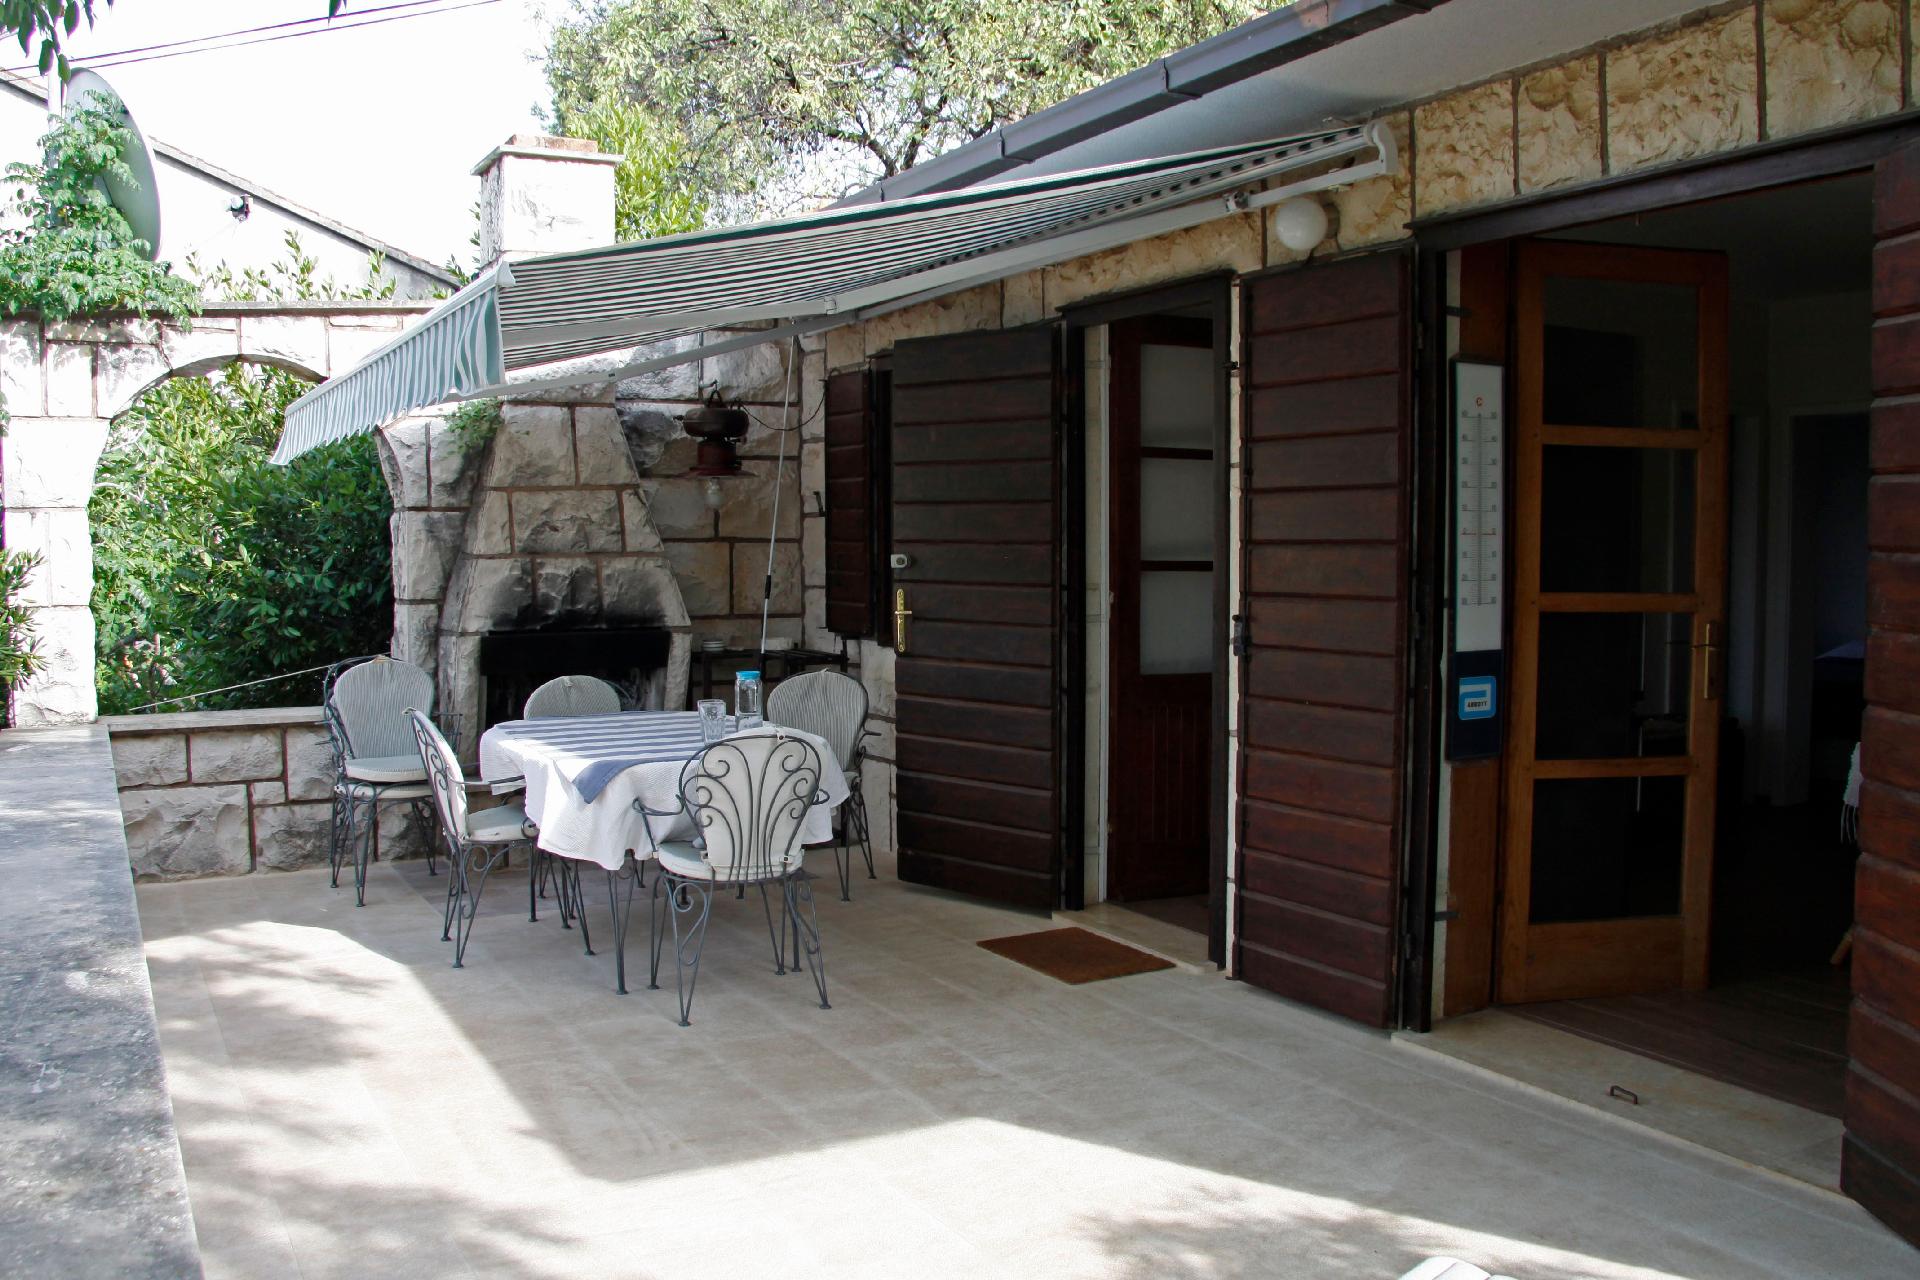 Ferienhaus mit Terrasse mit Steinofengrill und Gar Ferienhaus in Dalmatien